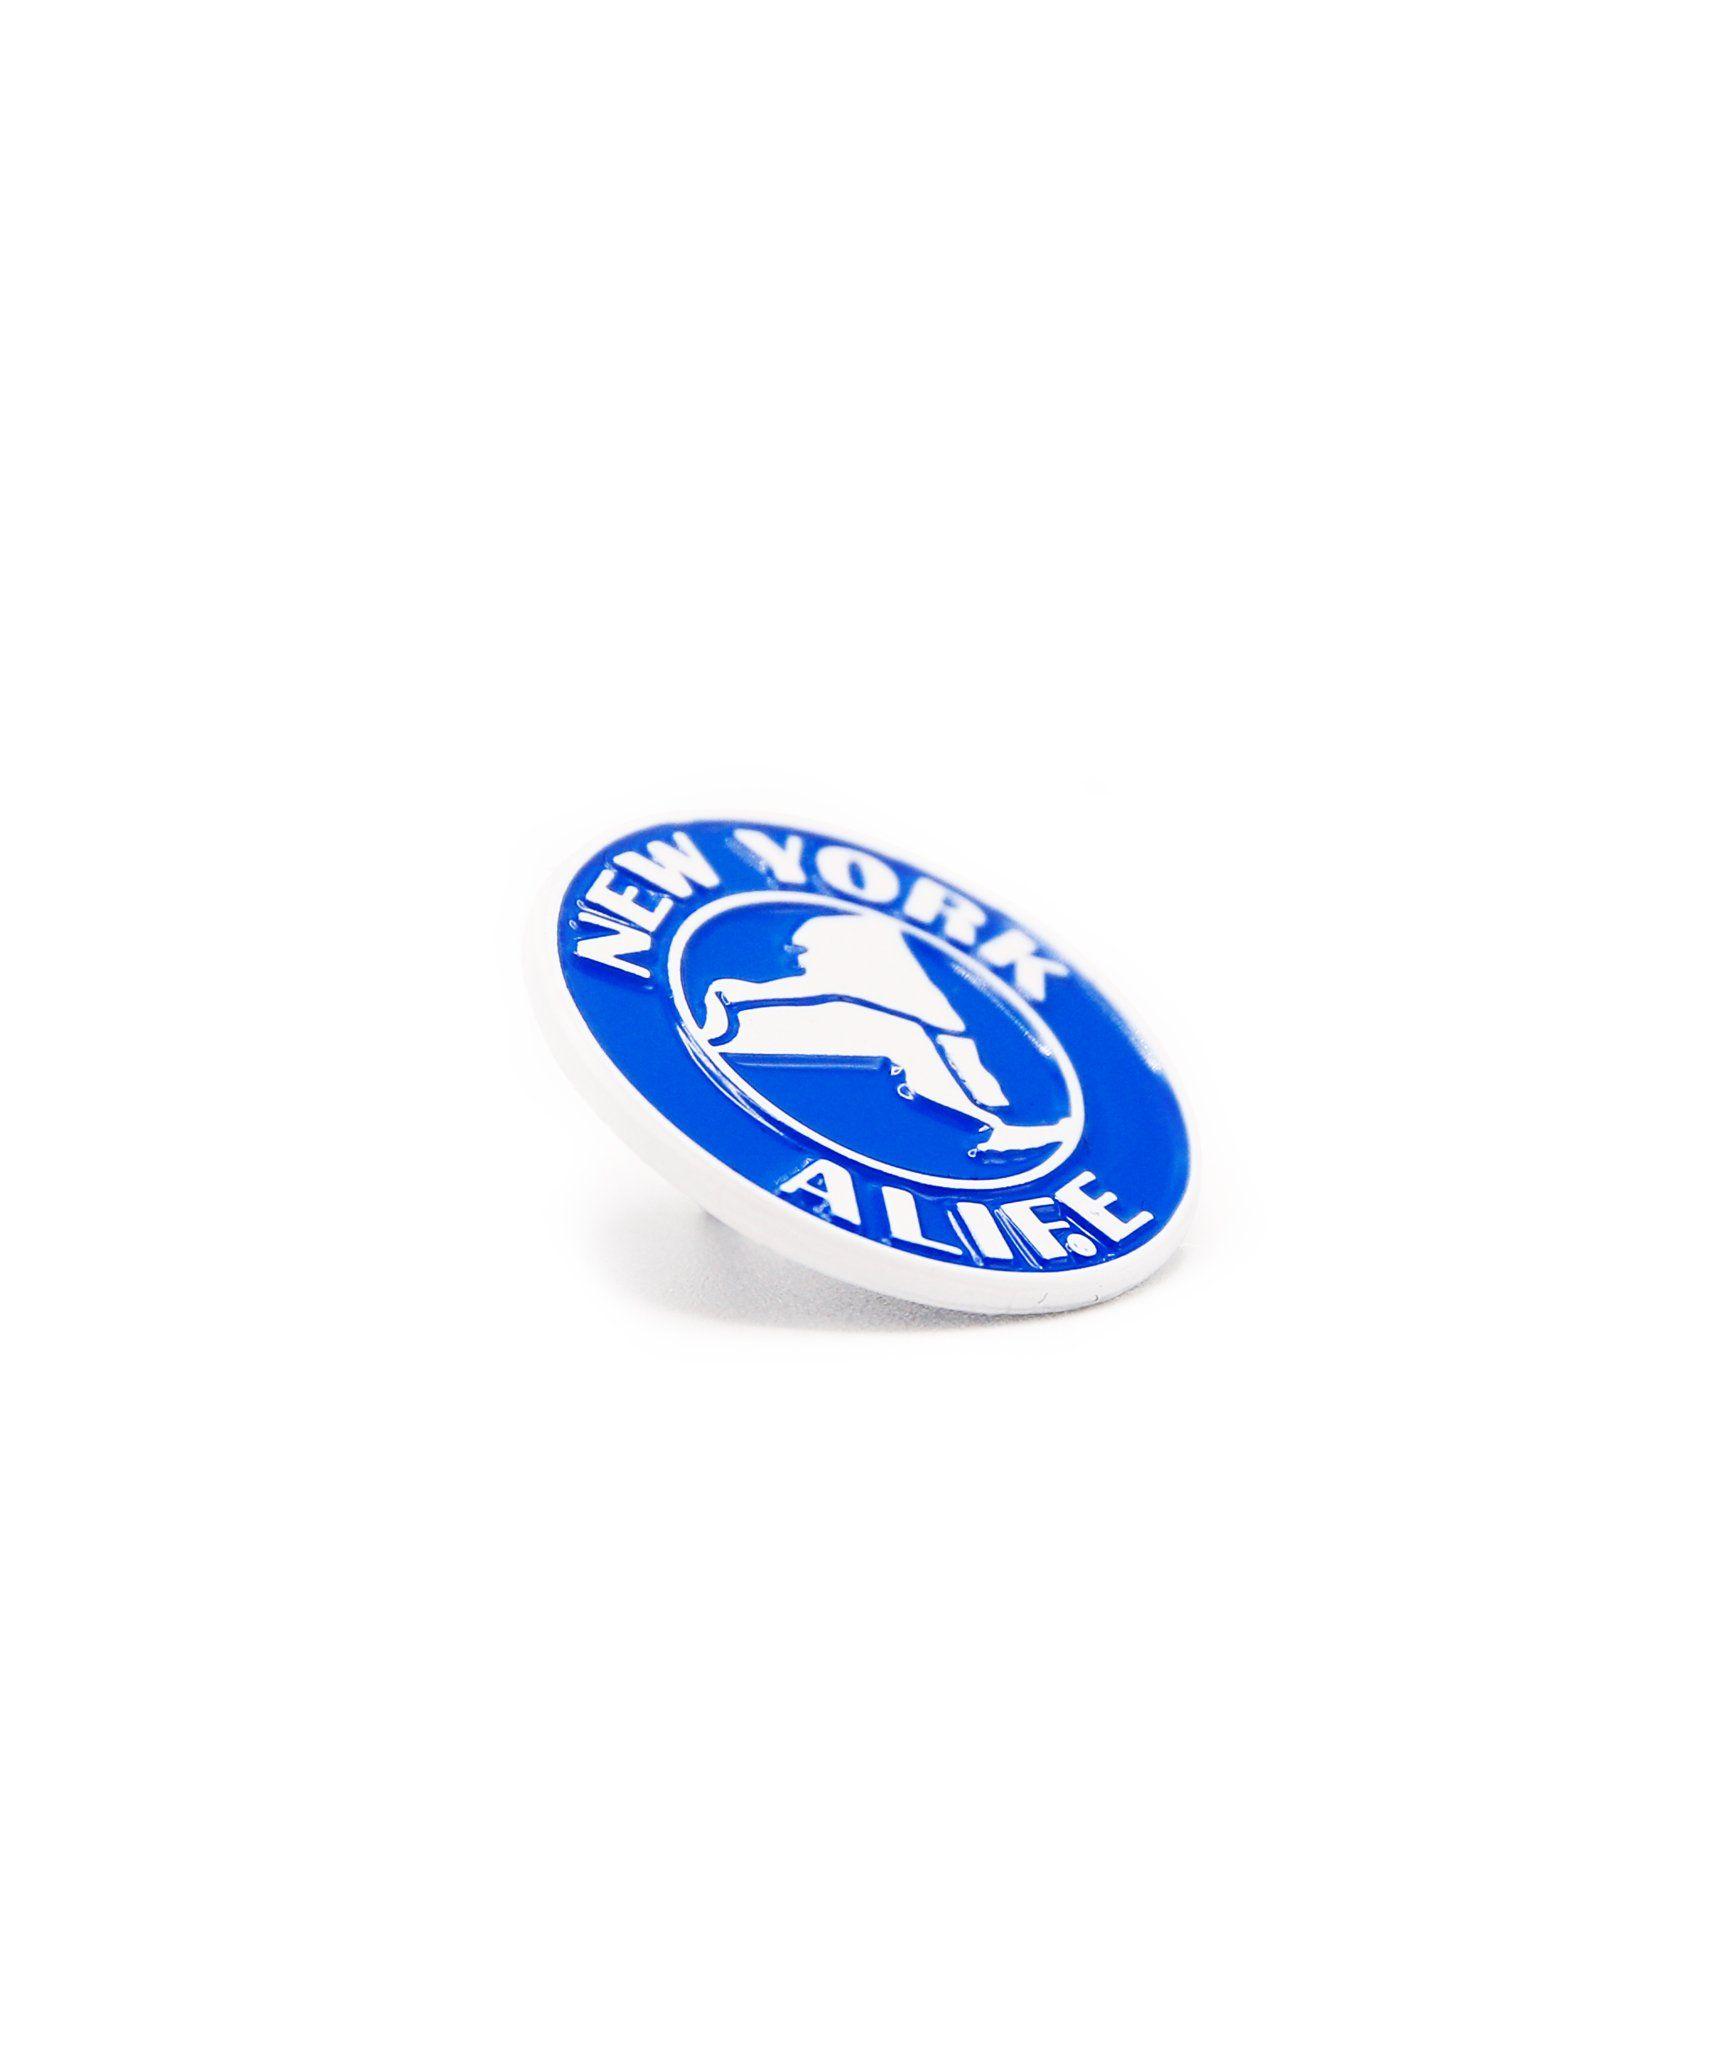 Alife NY Logo - Alife NY Thruway Pin